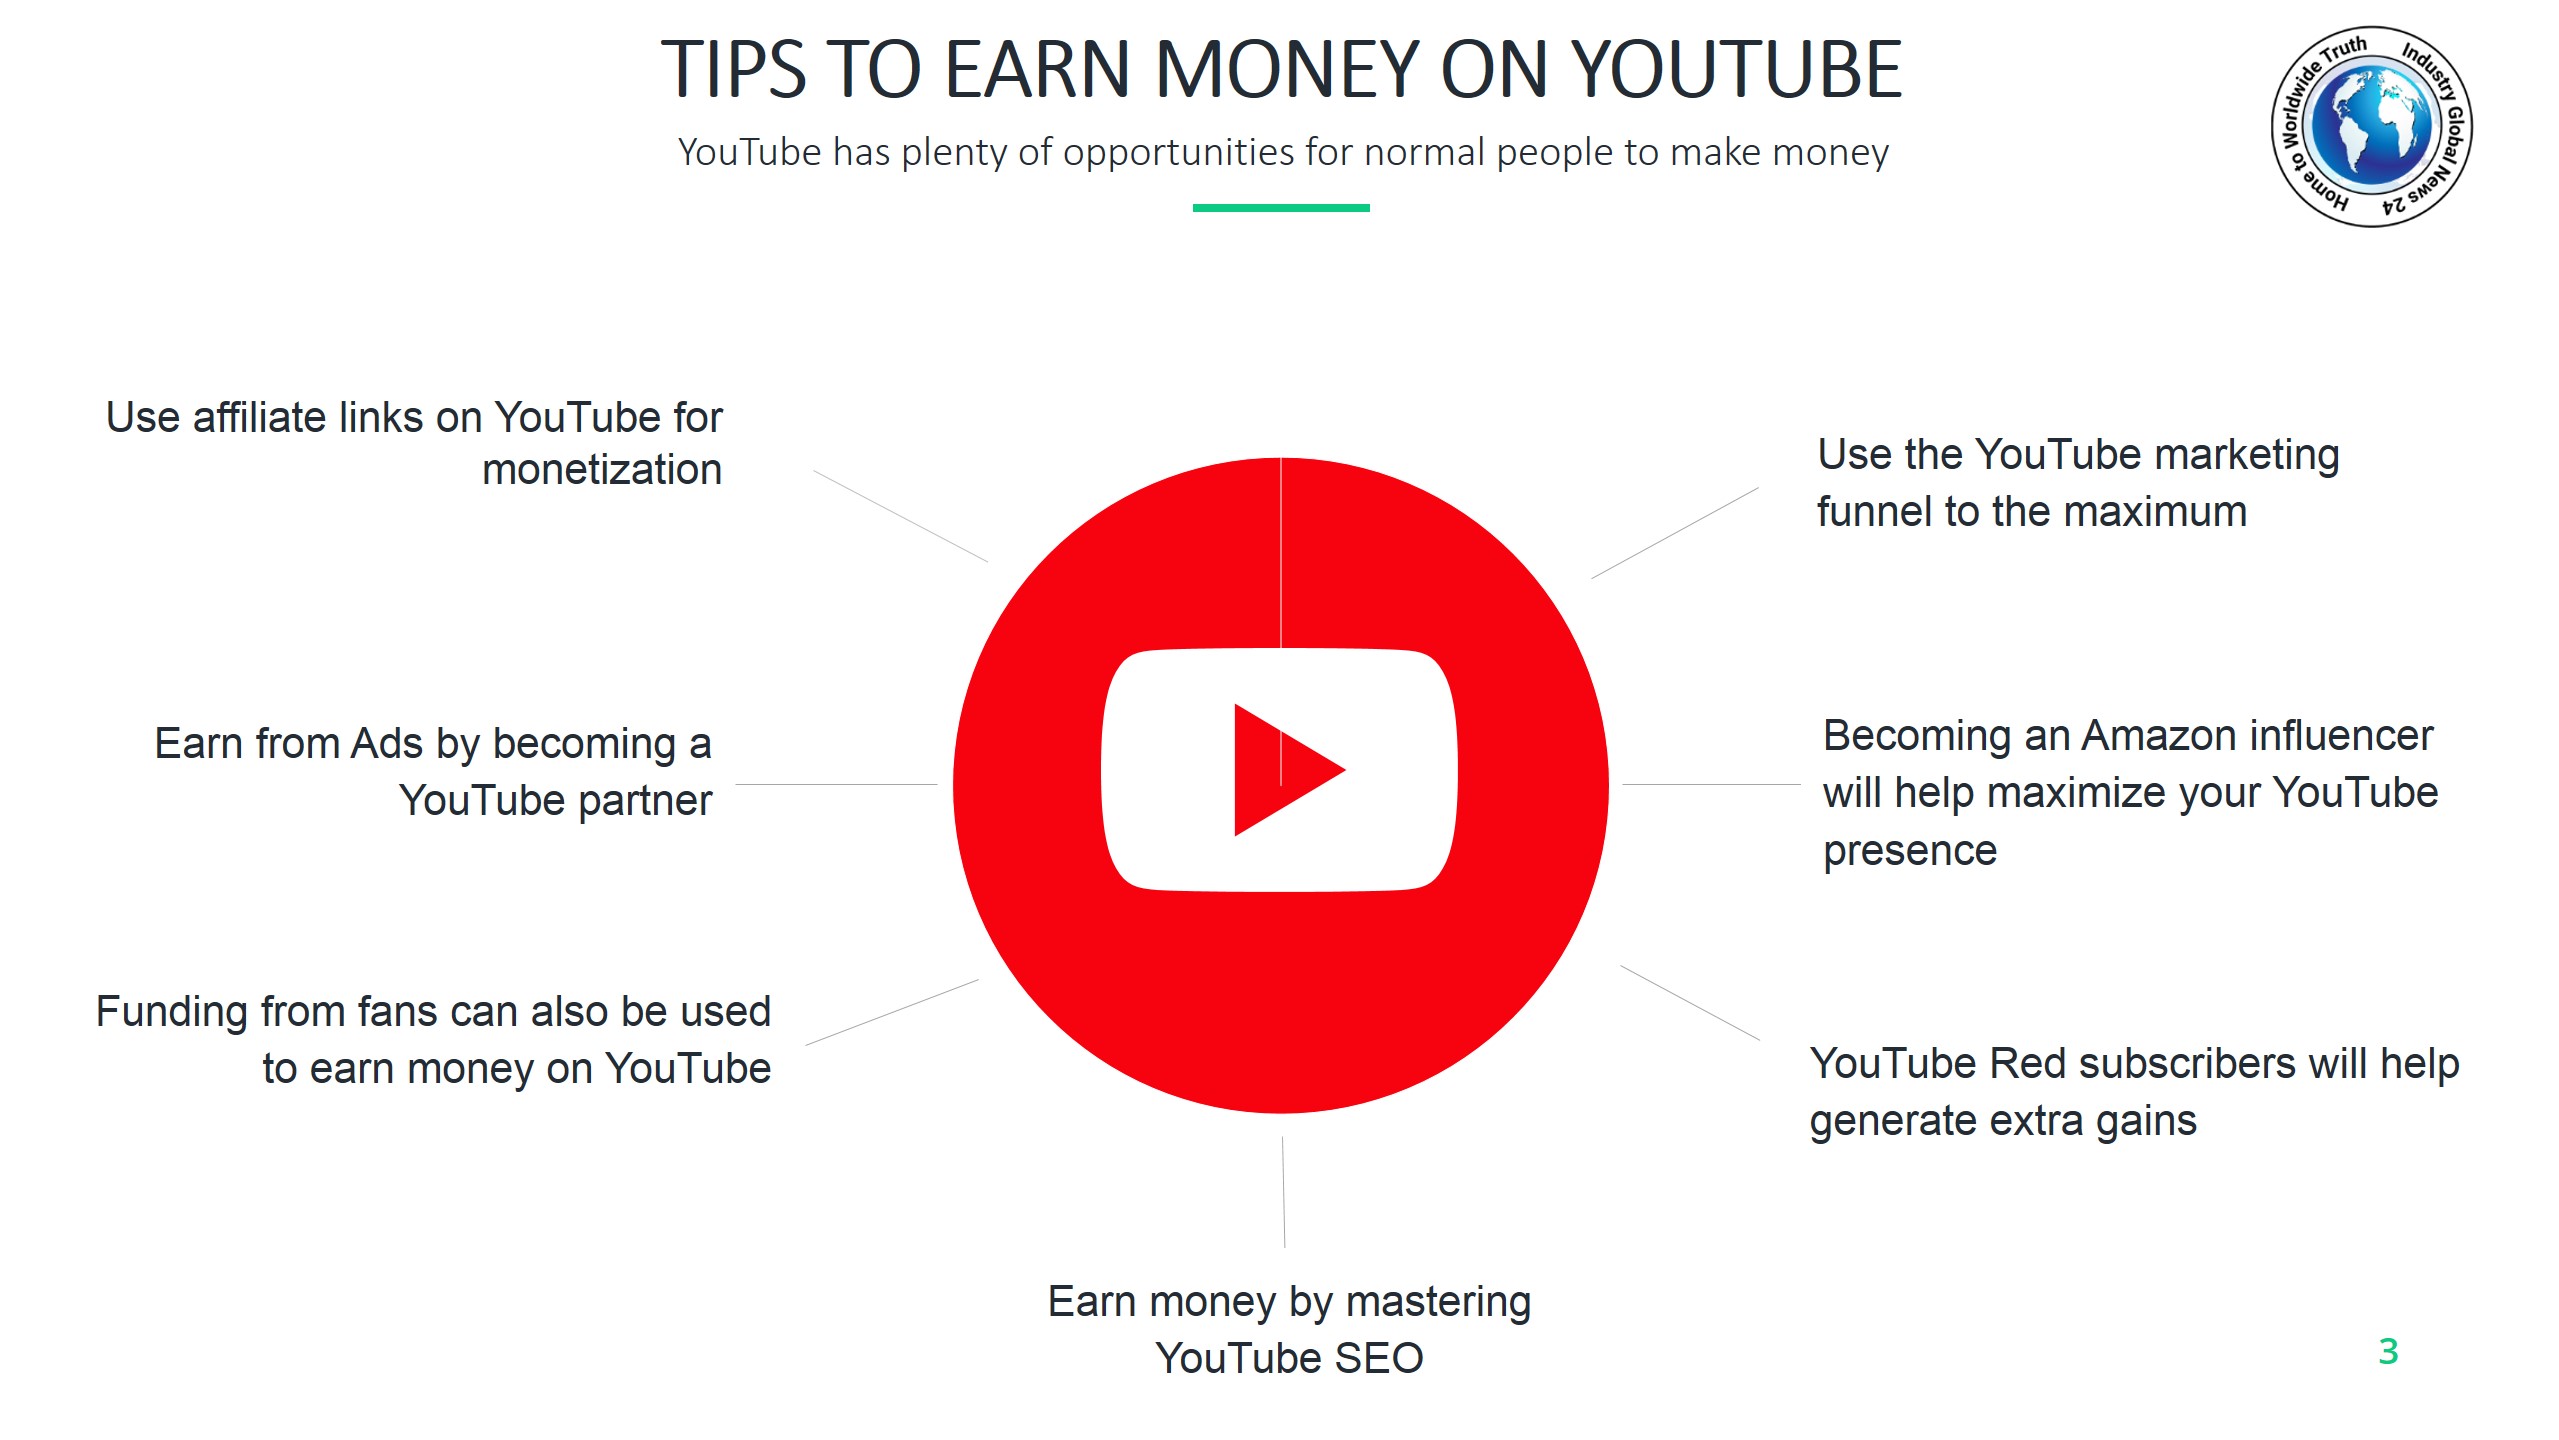 Tips to earn money on YouTube